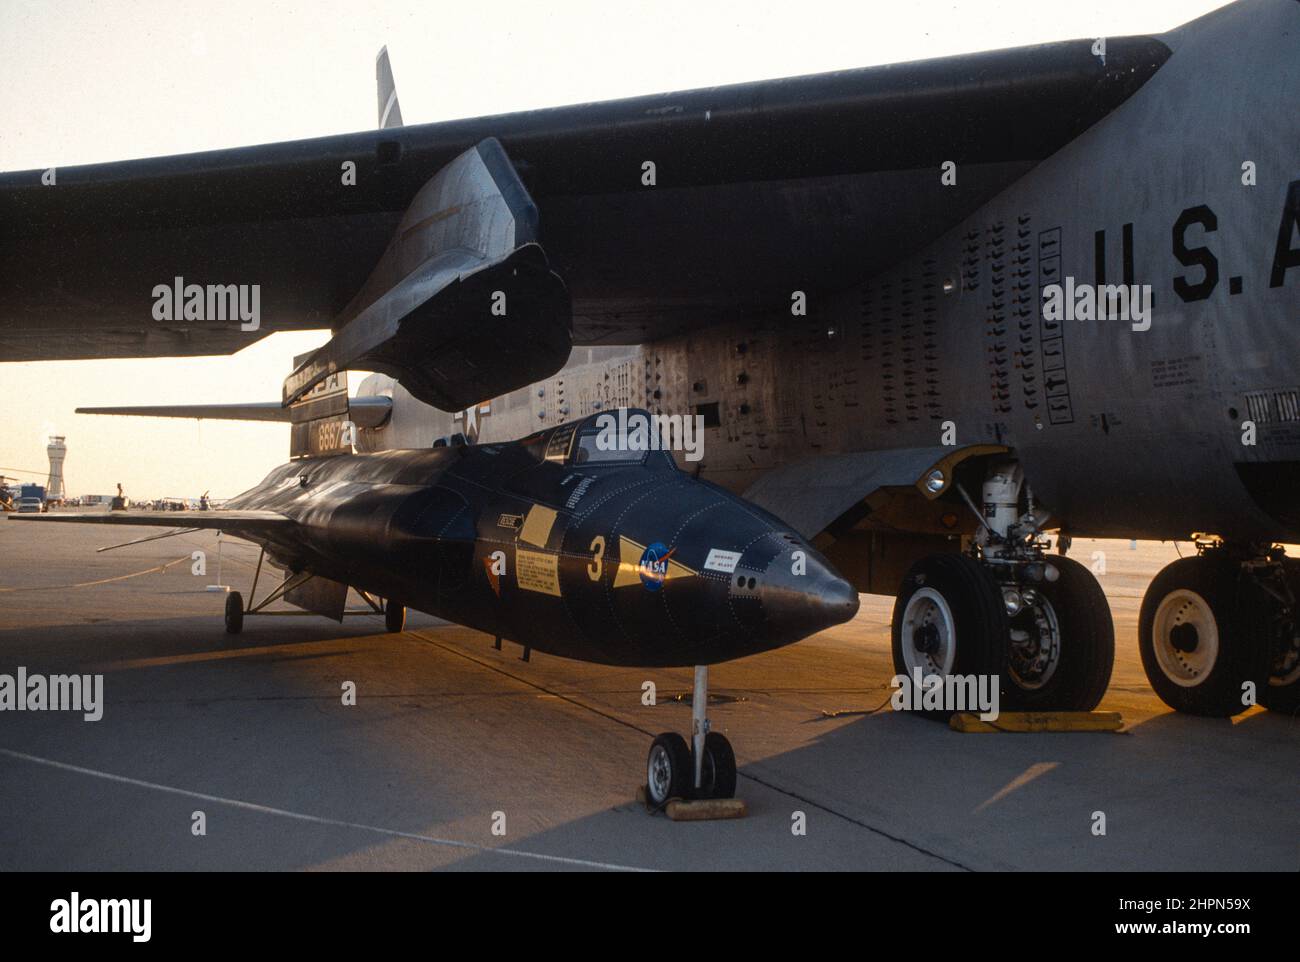 NASA X-15 Number 3 mockup on display at Edwards Air Force base next to NASA B-52 mother ship air drop aircraft. Stock Photo